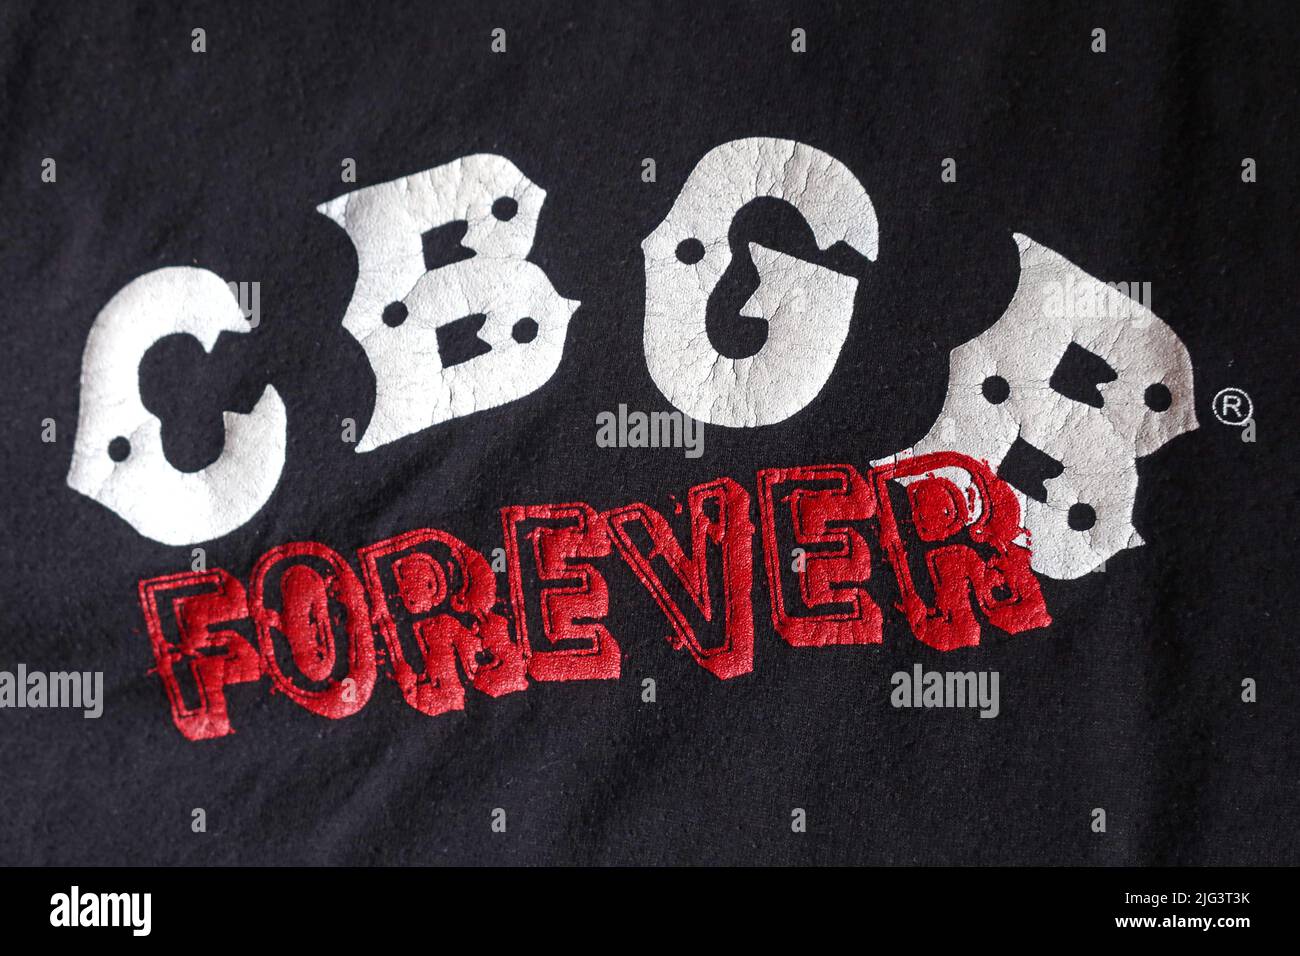 CBGB Forever Festival, fièrement soutenu par Little Stevens Underground garage, Washington Square Park, 31 août 2005, CGGB.Com Banque D'Images